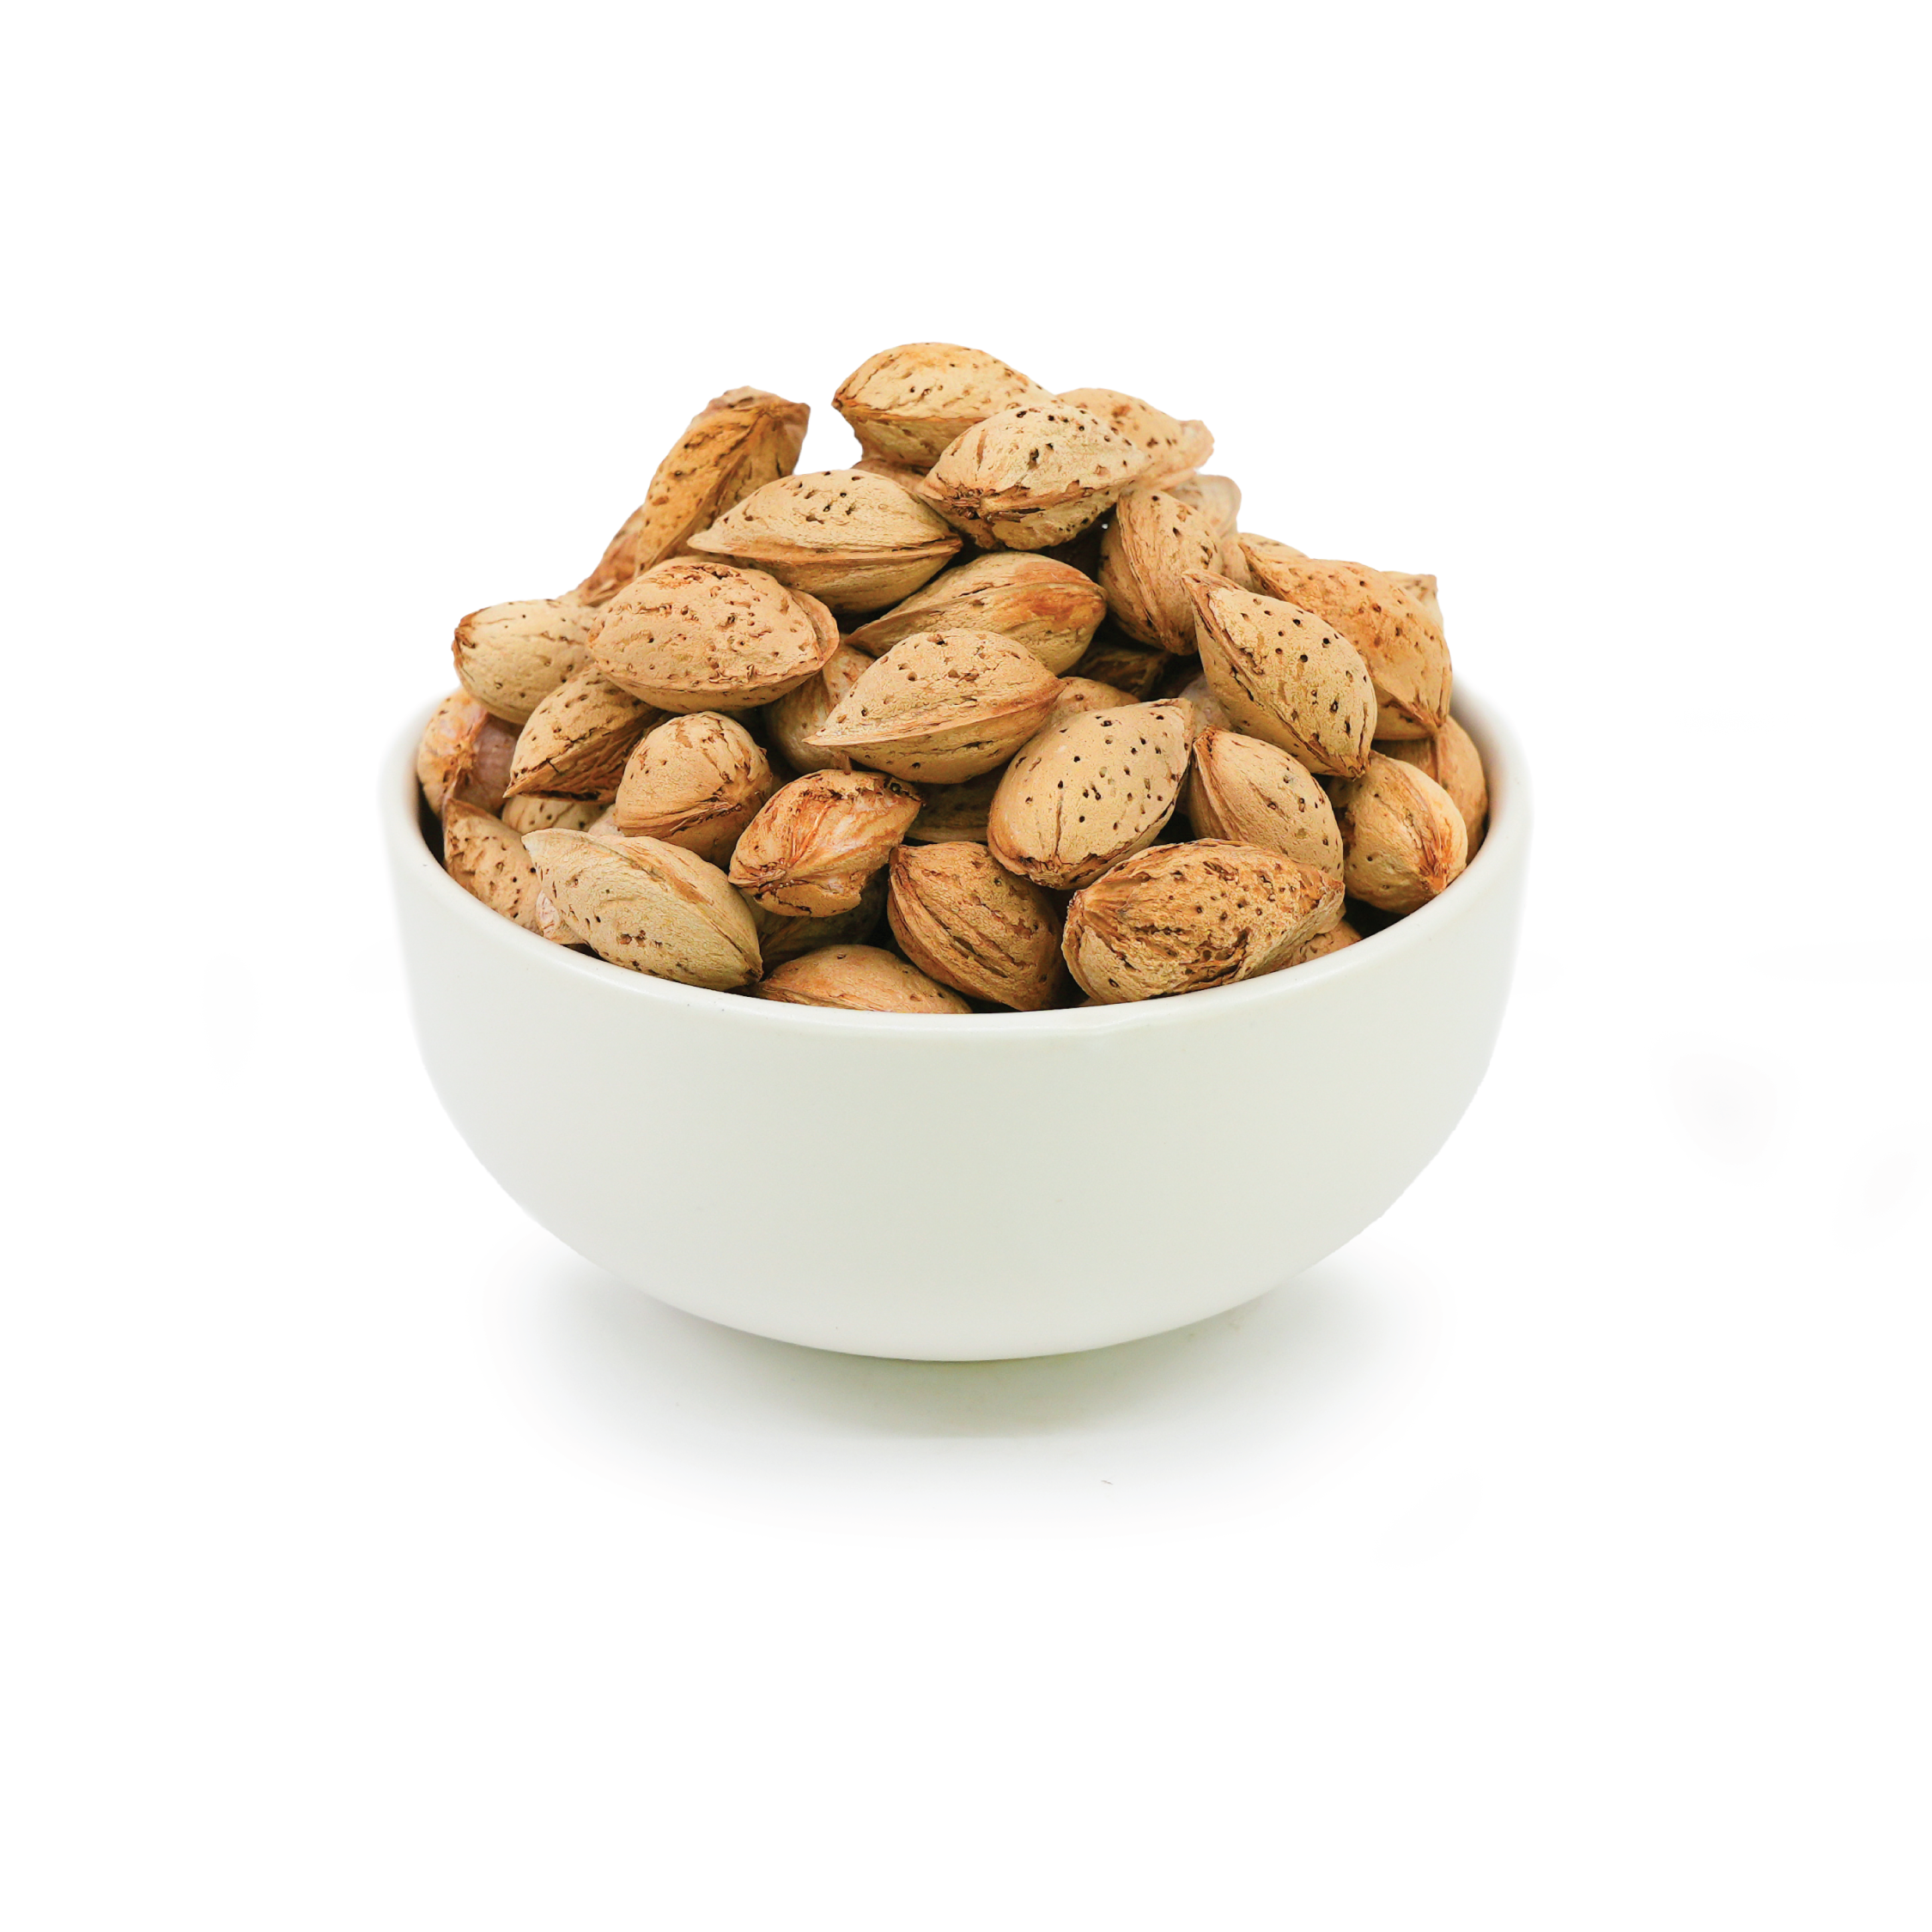 Almond in Shell Origin Iran